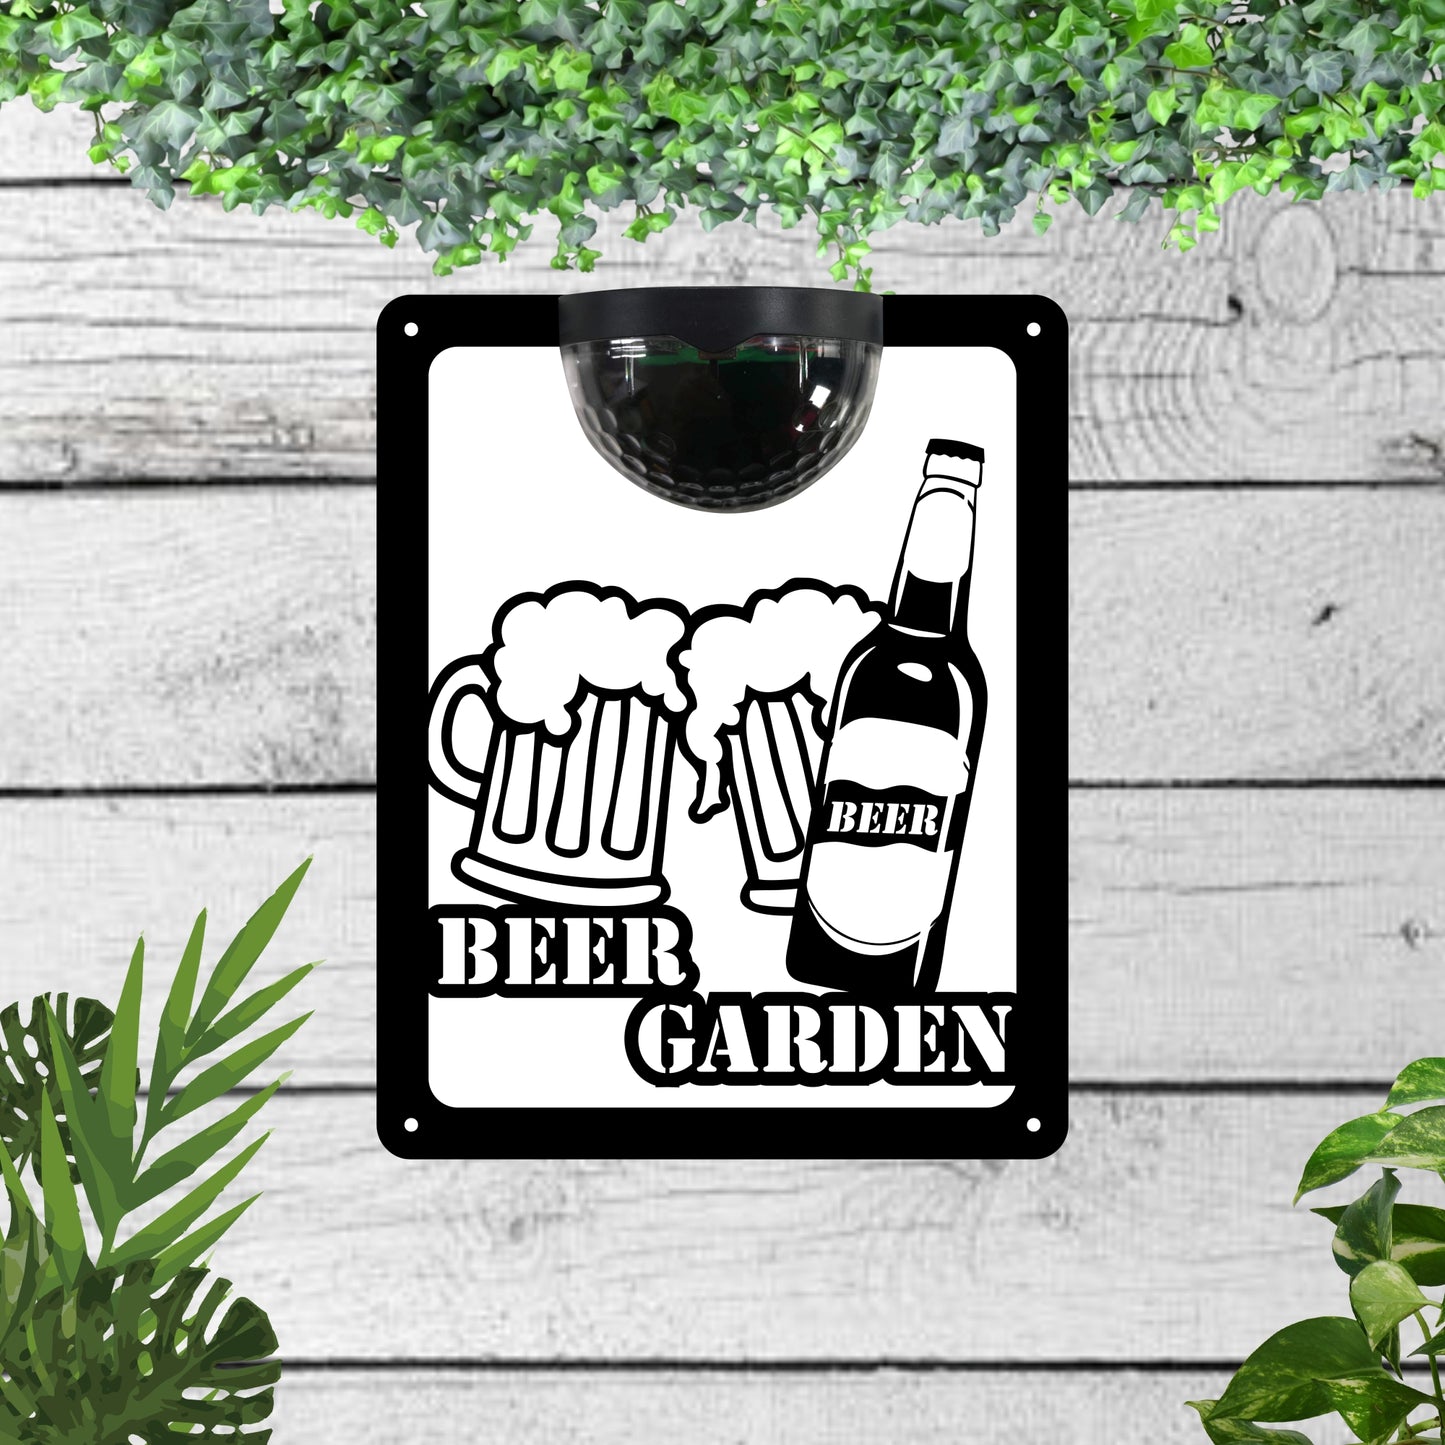 Garden Solar Light Wall Plaque For a Beer Garden | John Alans